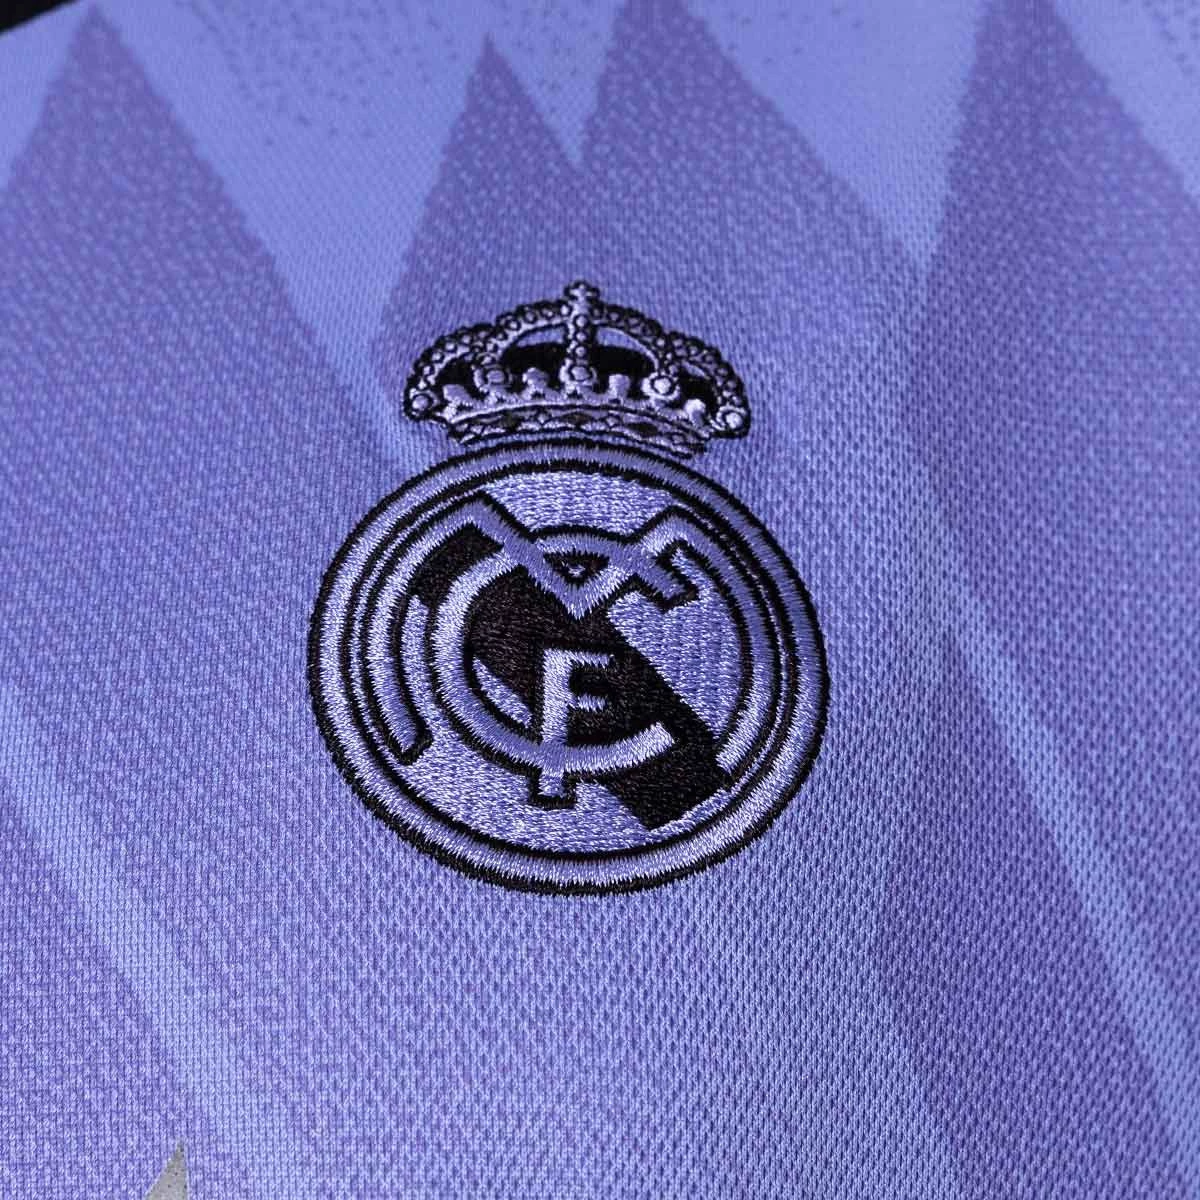 2 PACK Real Madrid CF® Logo + Camiseta